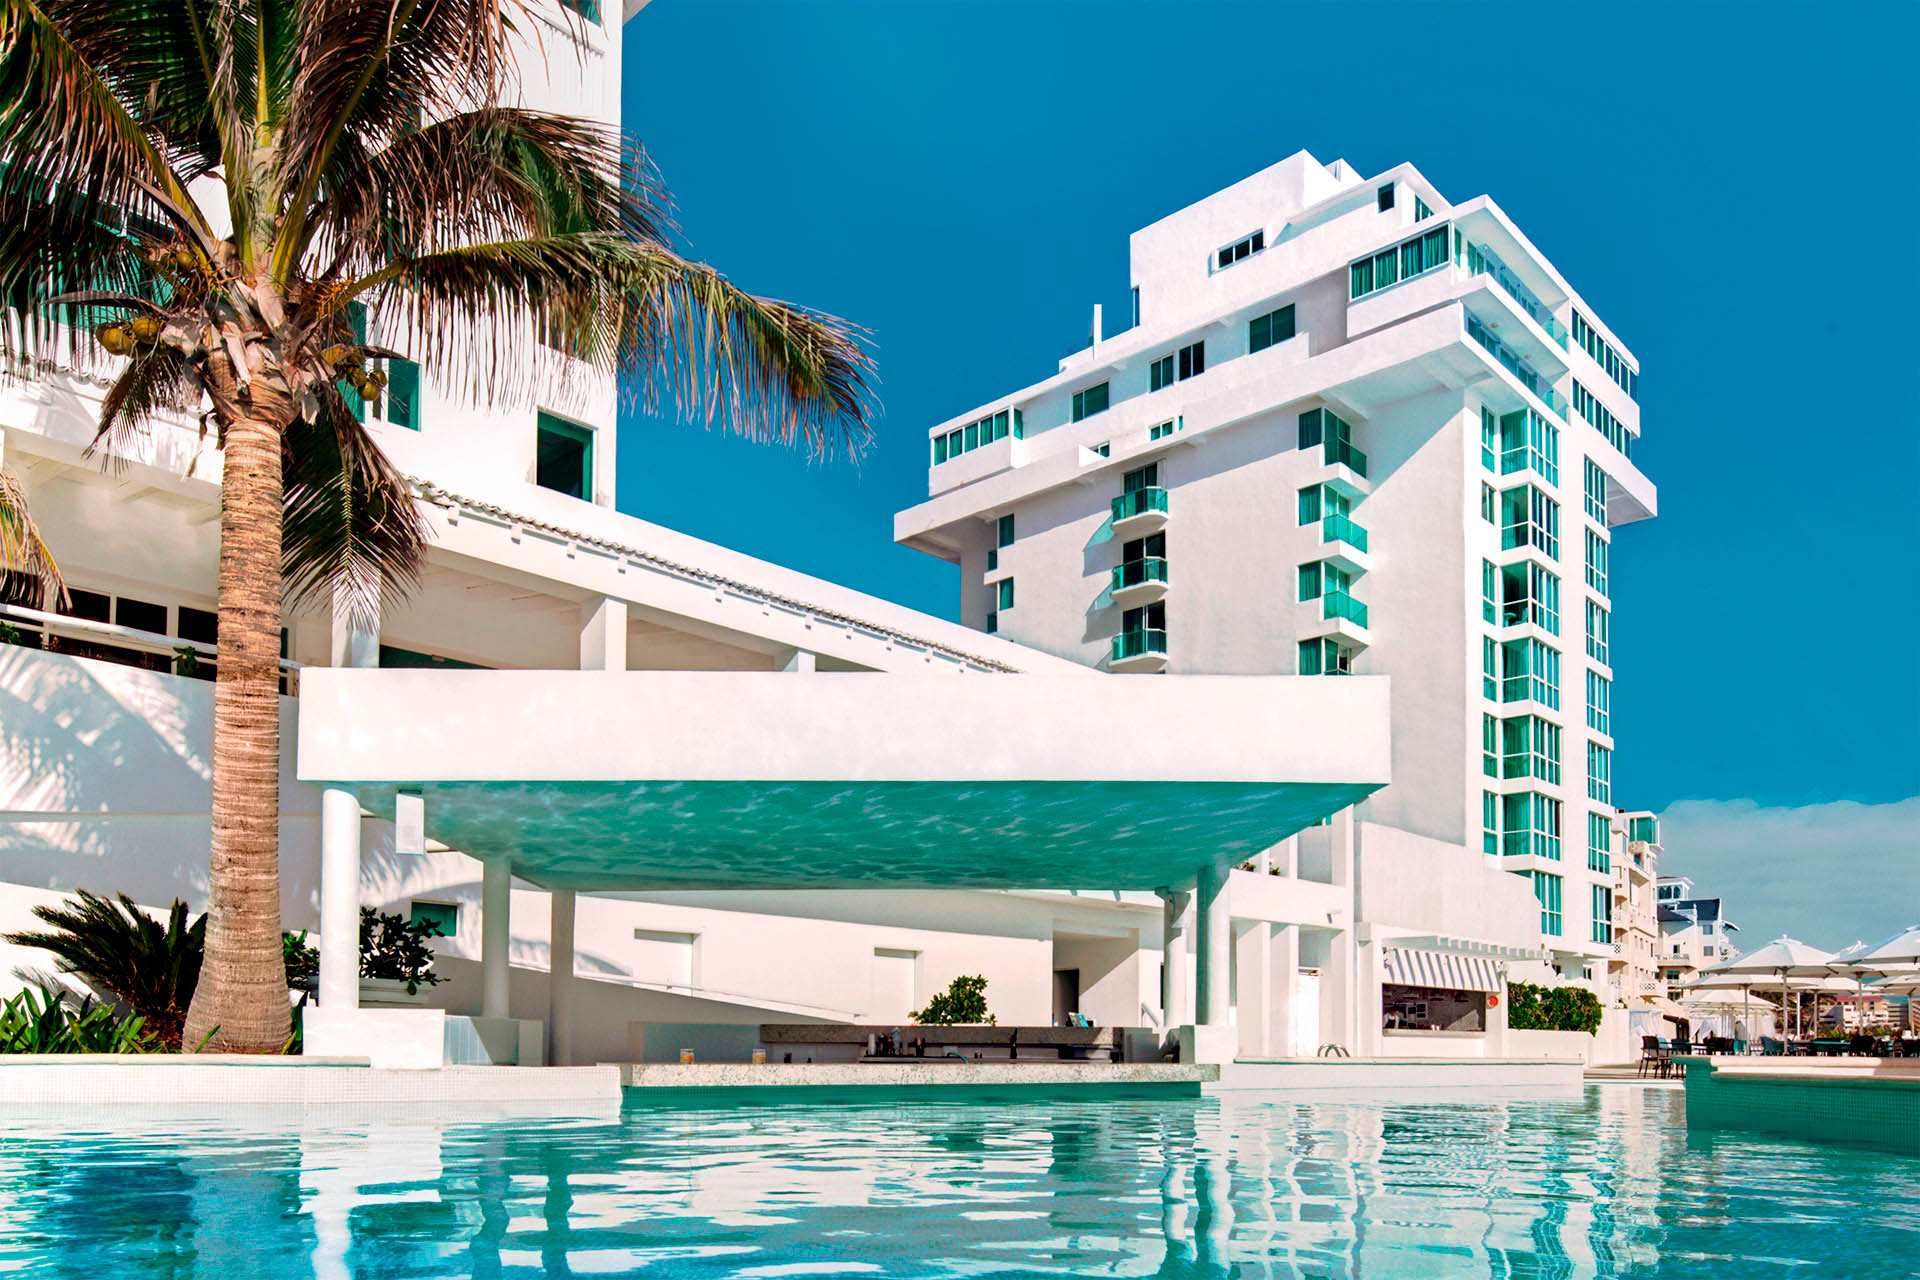 36 hoteles de Cancún sin refugio anti huracanes